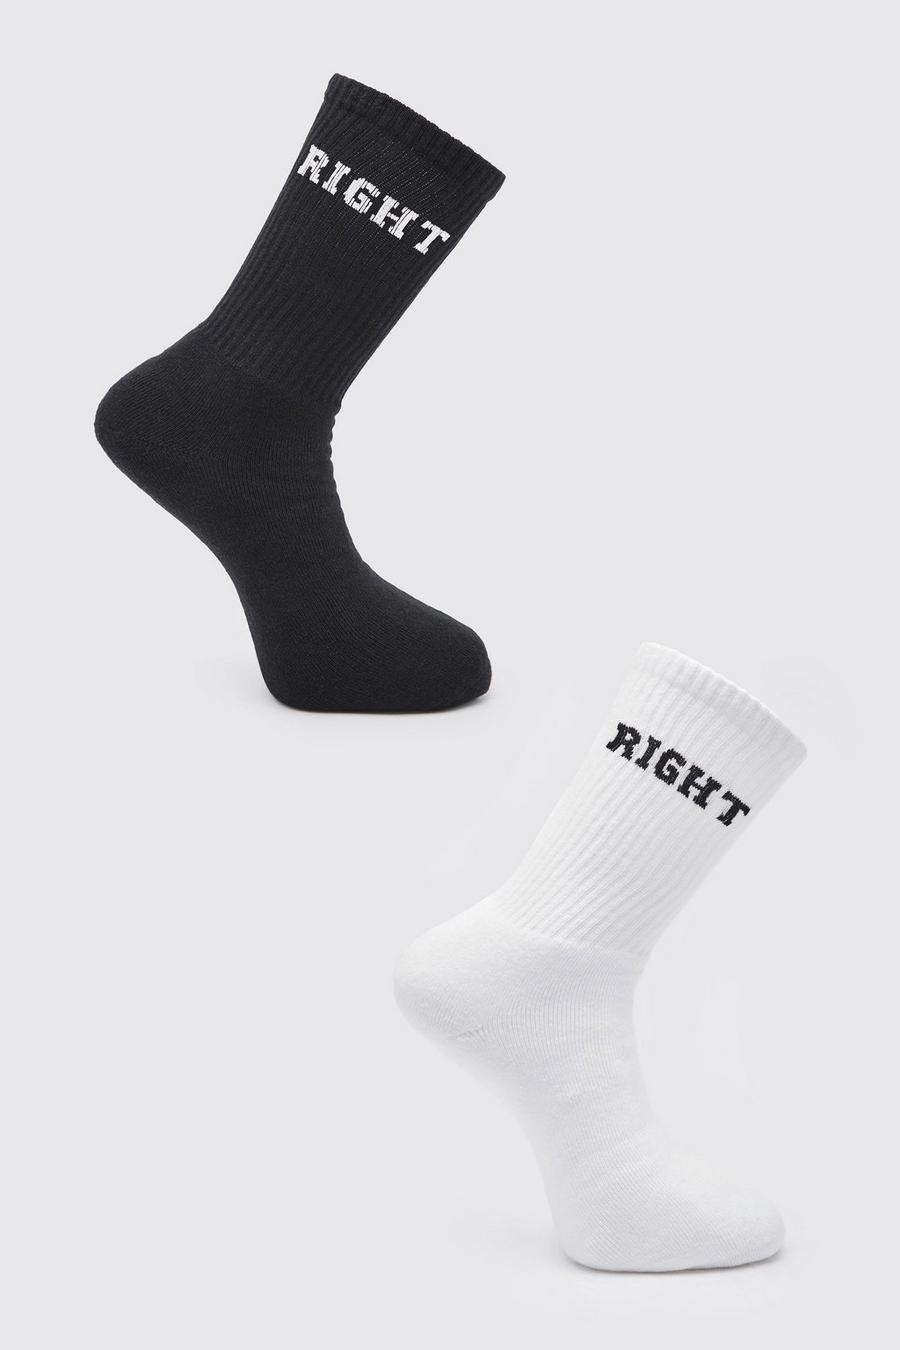 Black 2 Pack Left Right Socks